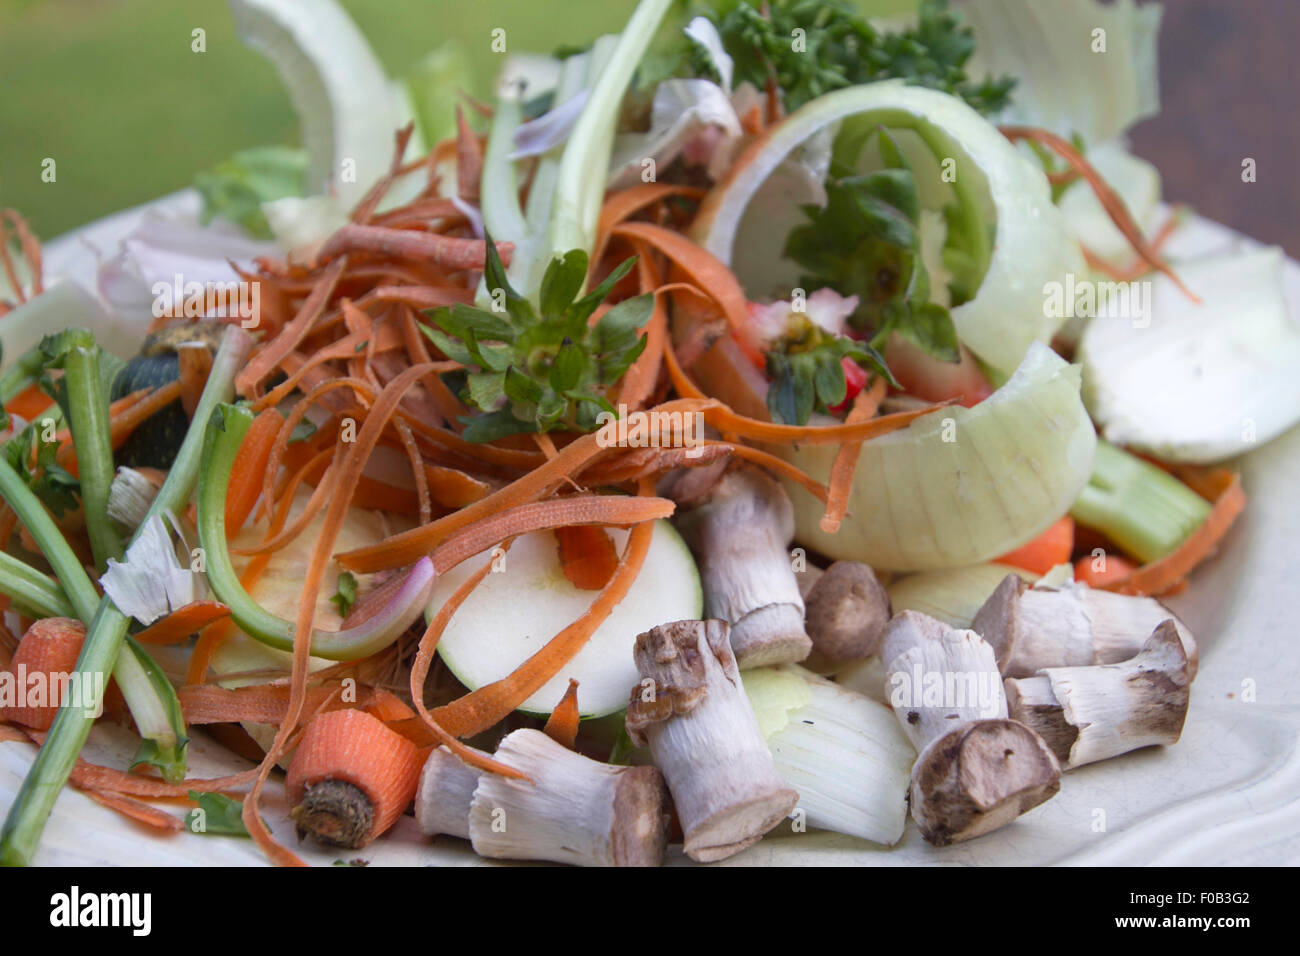 Close up of assiette pleine de pelures de légumes et des raclures en attente d'être composté Banque D'Images